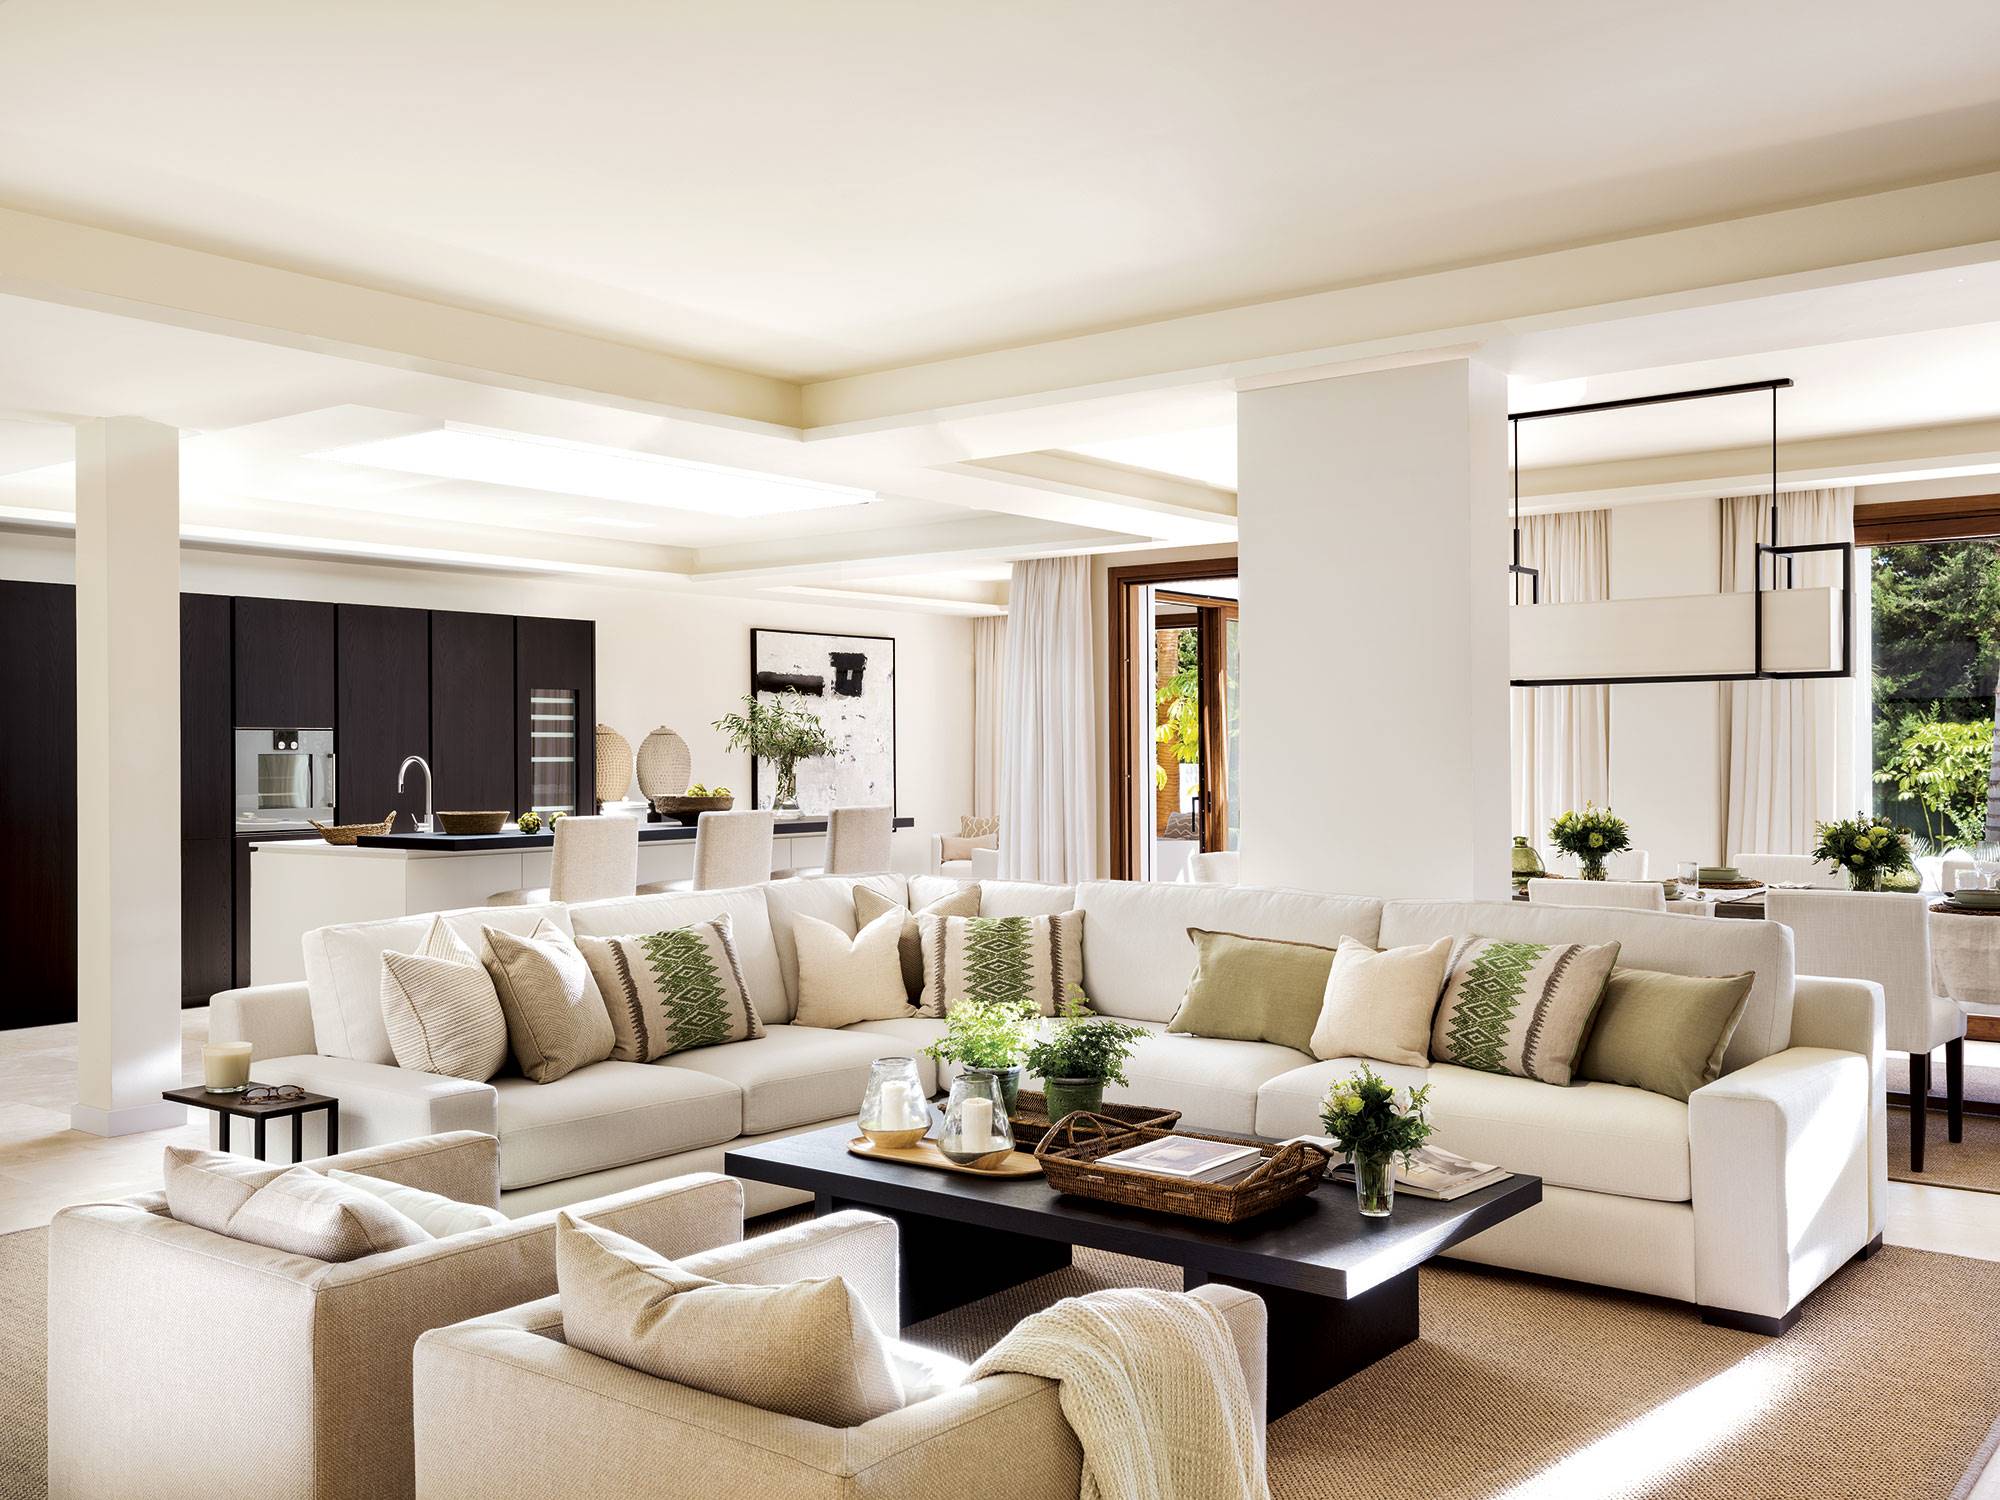 Salón interior en tonos beiges, sofá blanco esquinero y butacas.